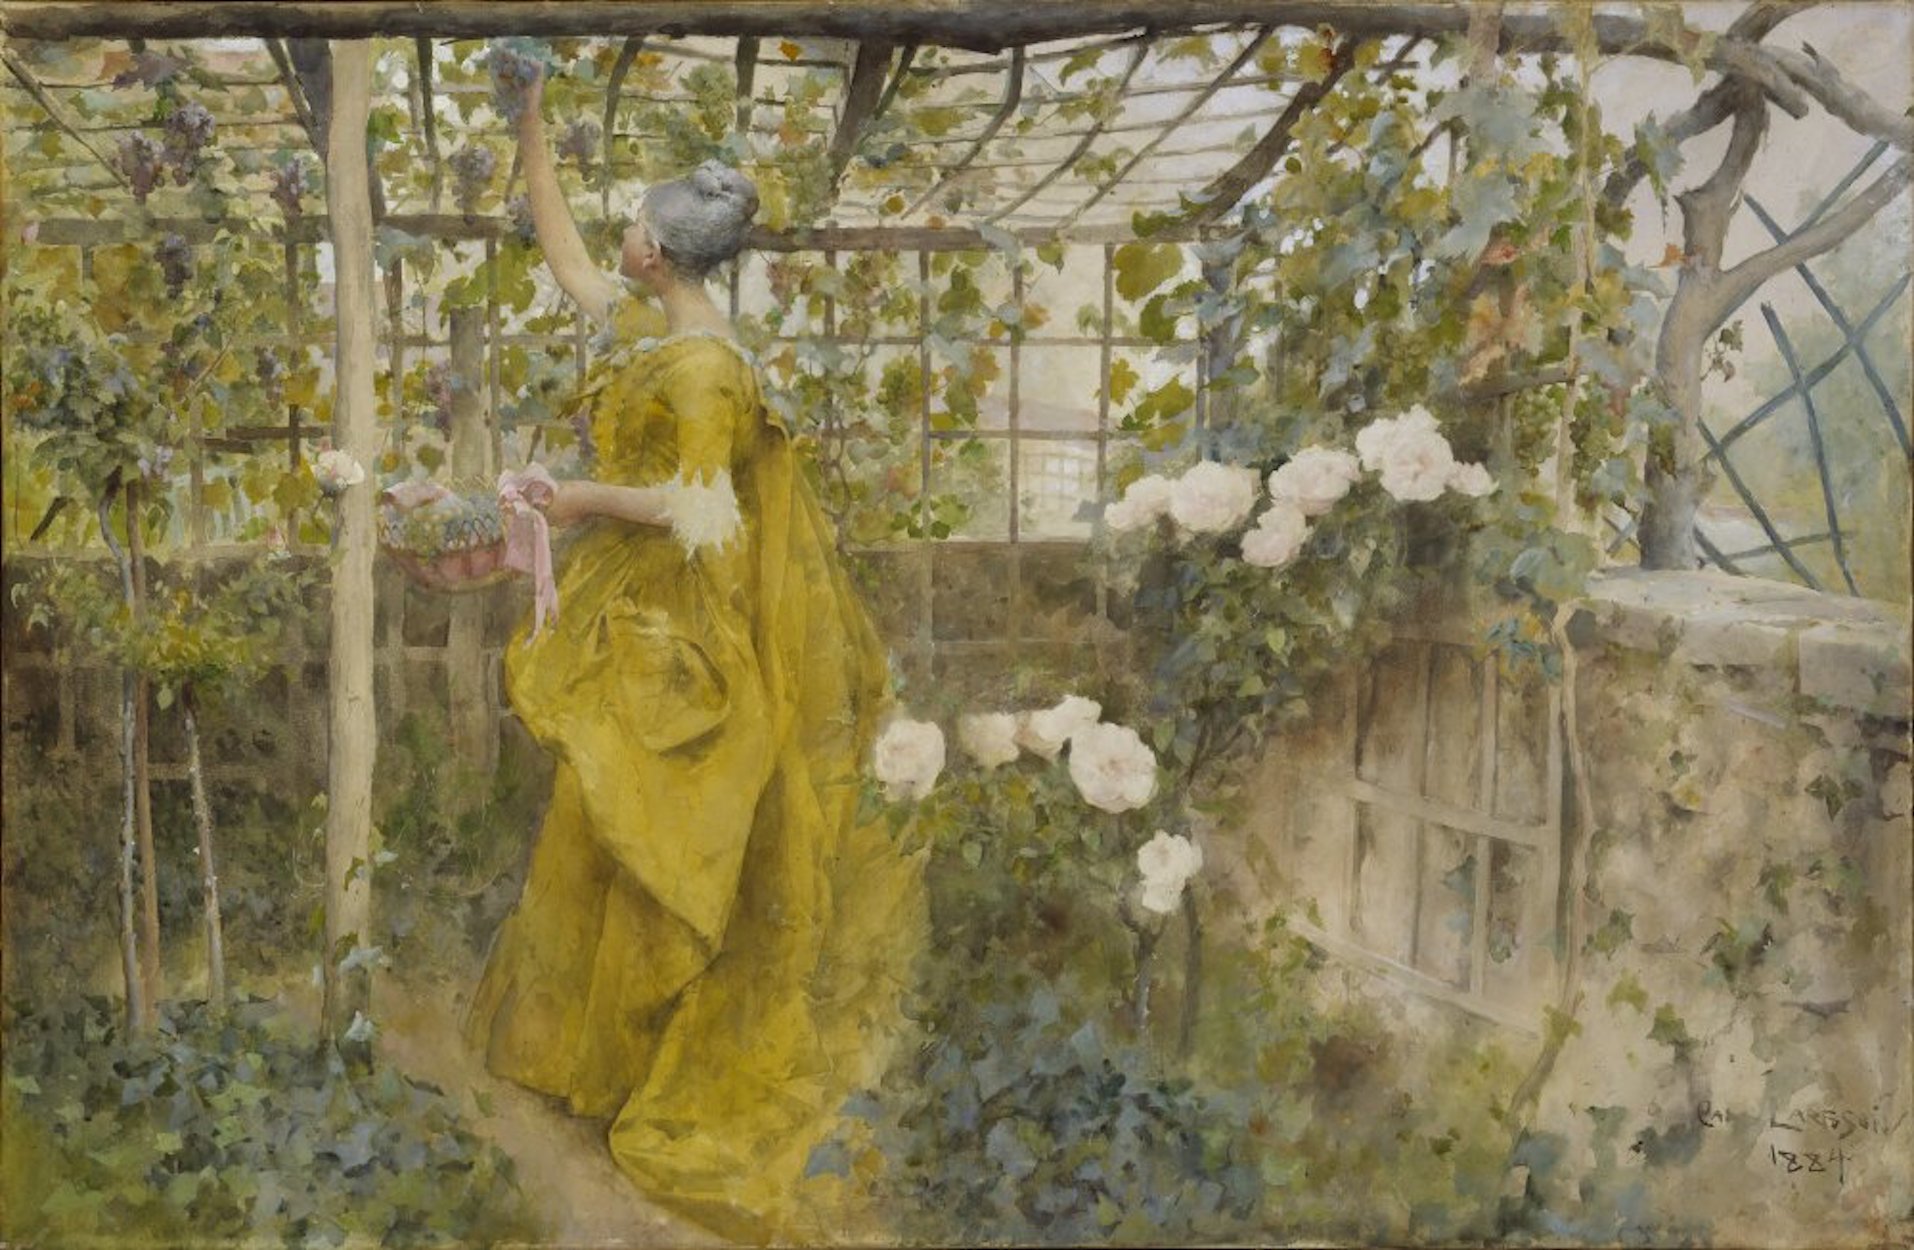 الكرمة by Carl Larsson - 1884 - 60 x 92 cm 